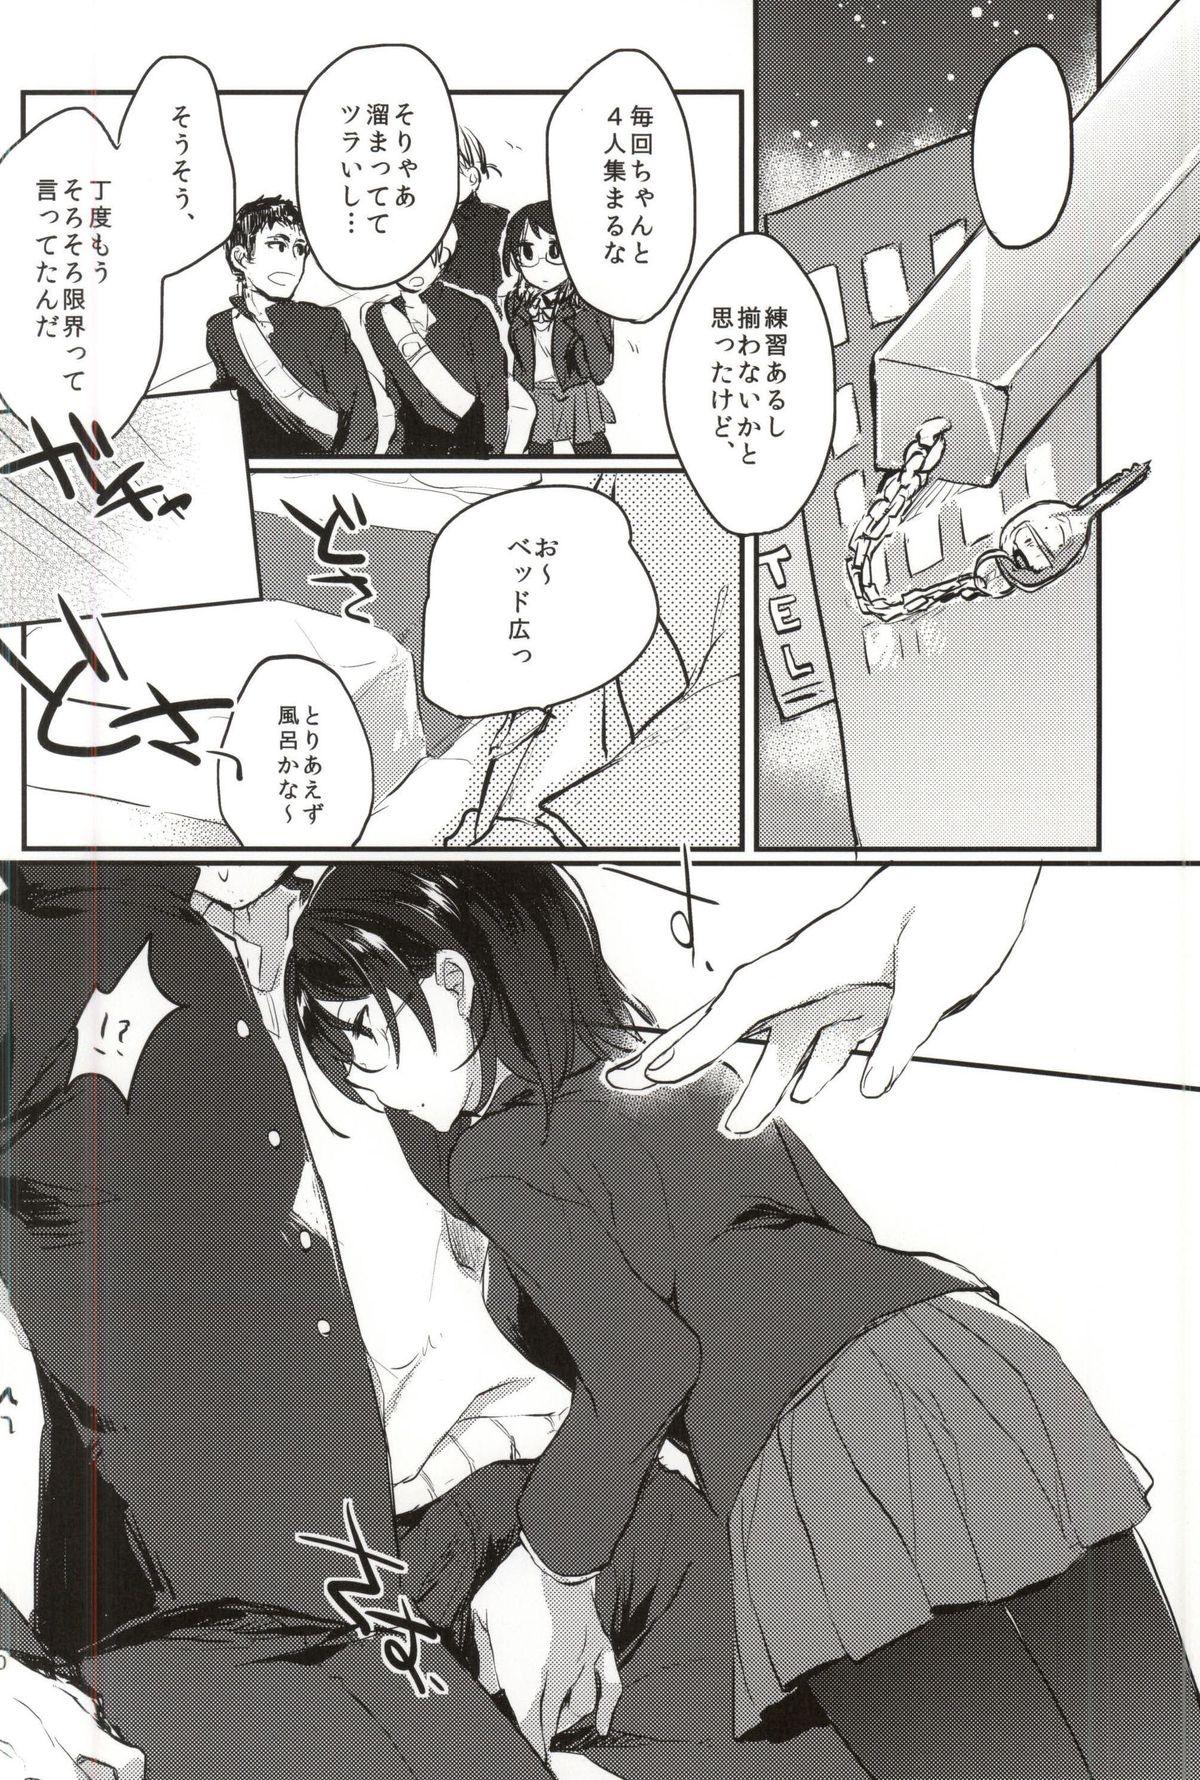 Pain Nakayoshi Karasu no 3 Nensei. - Haikyuu Lesbian - Page 8